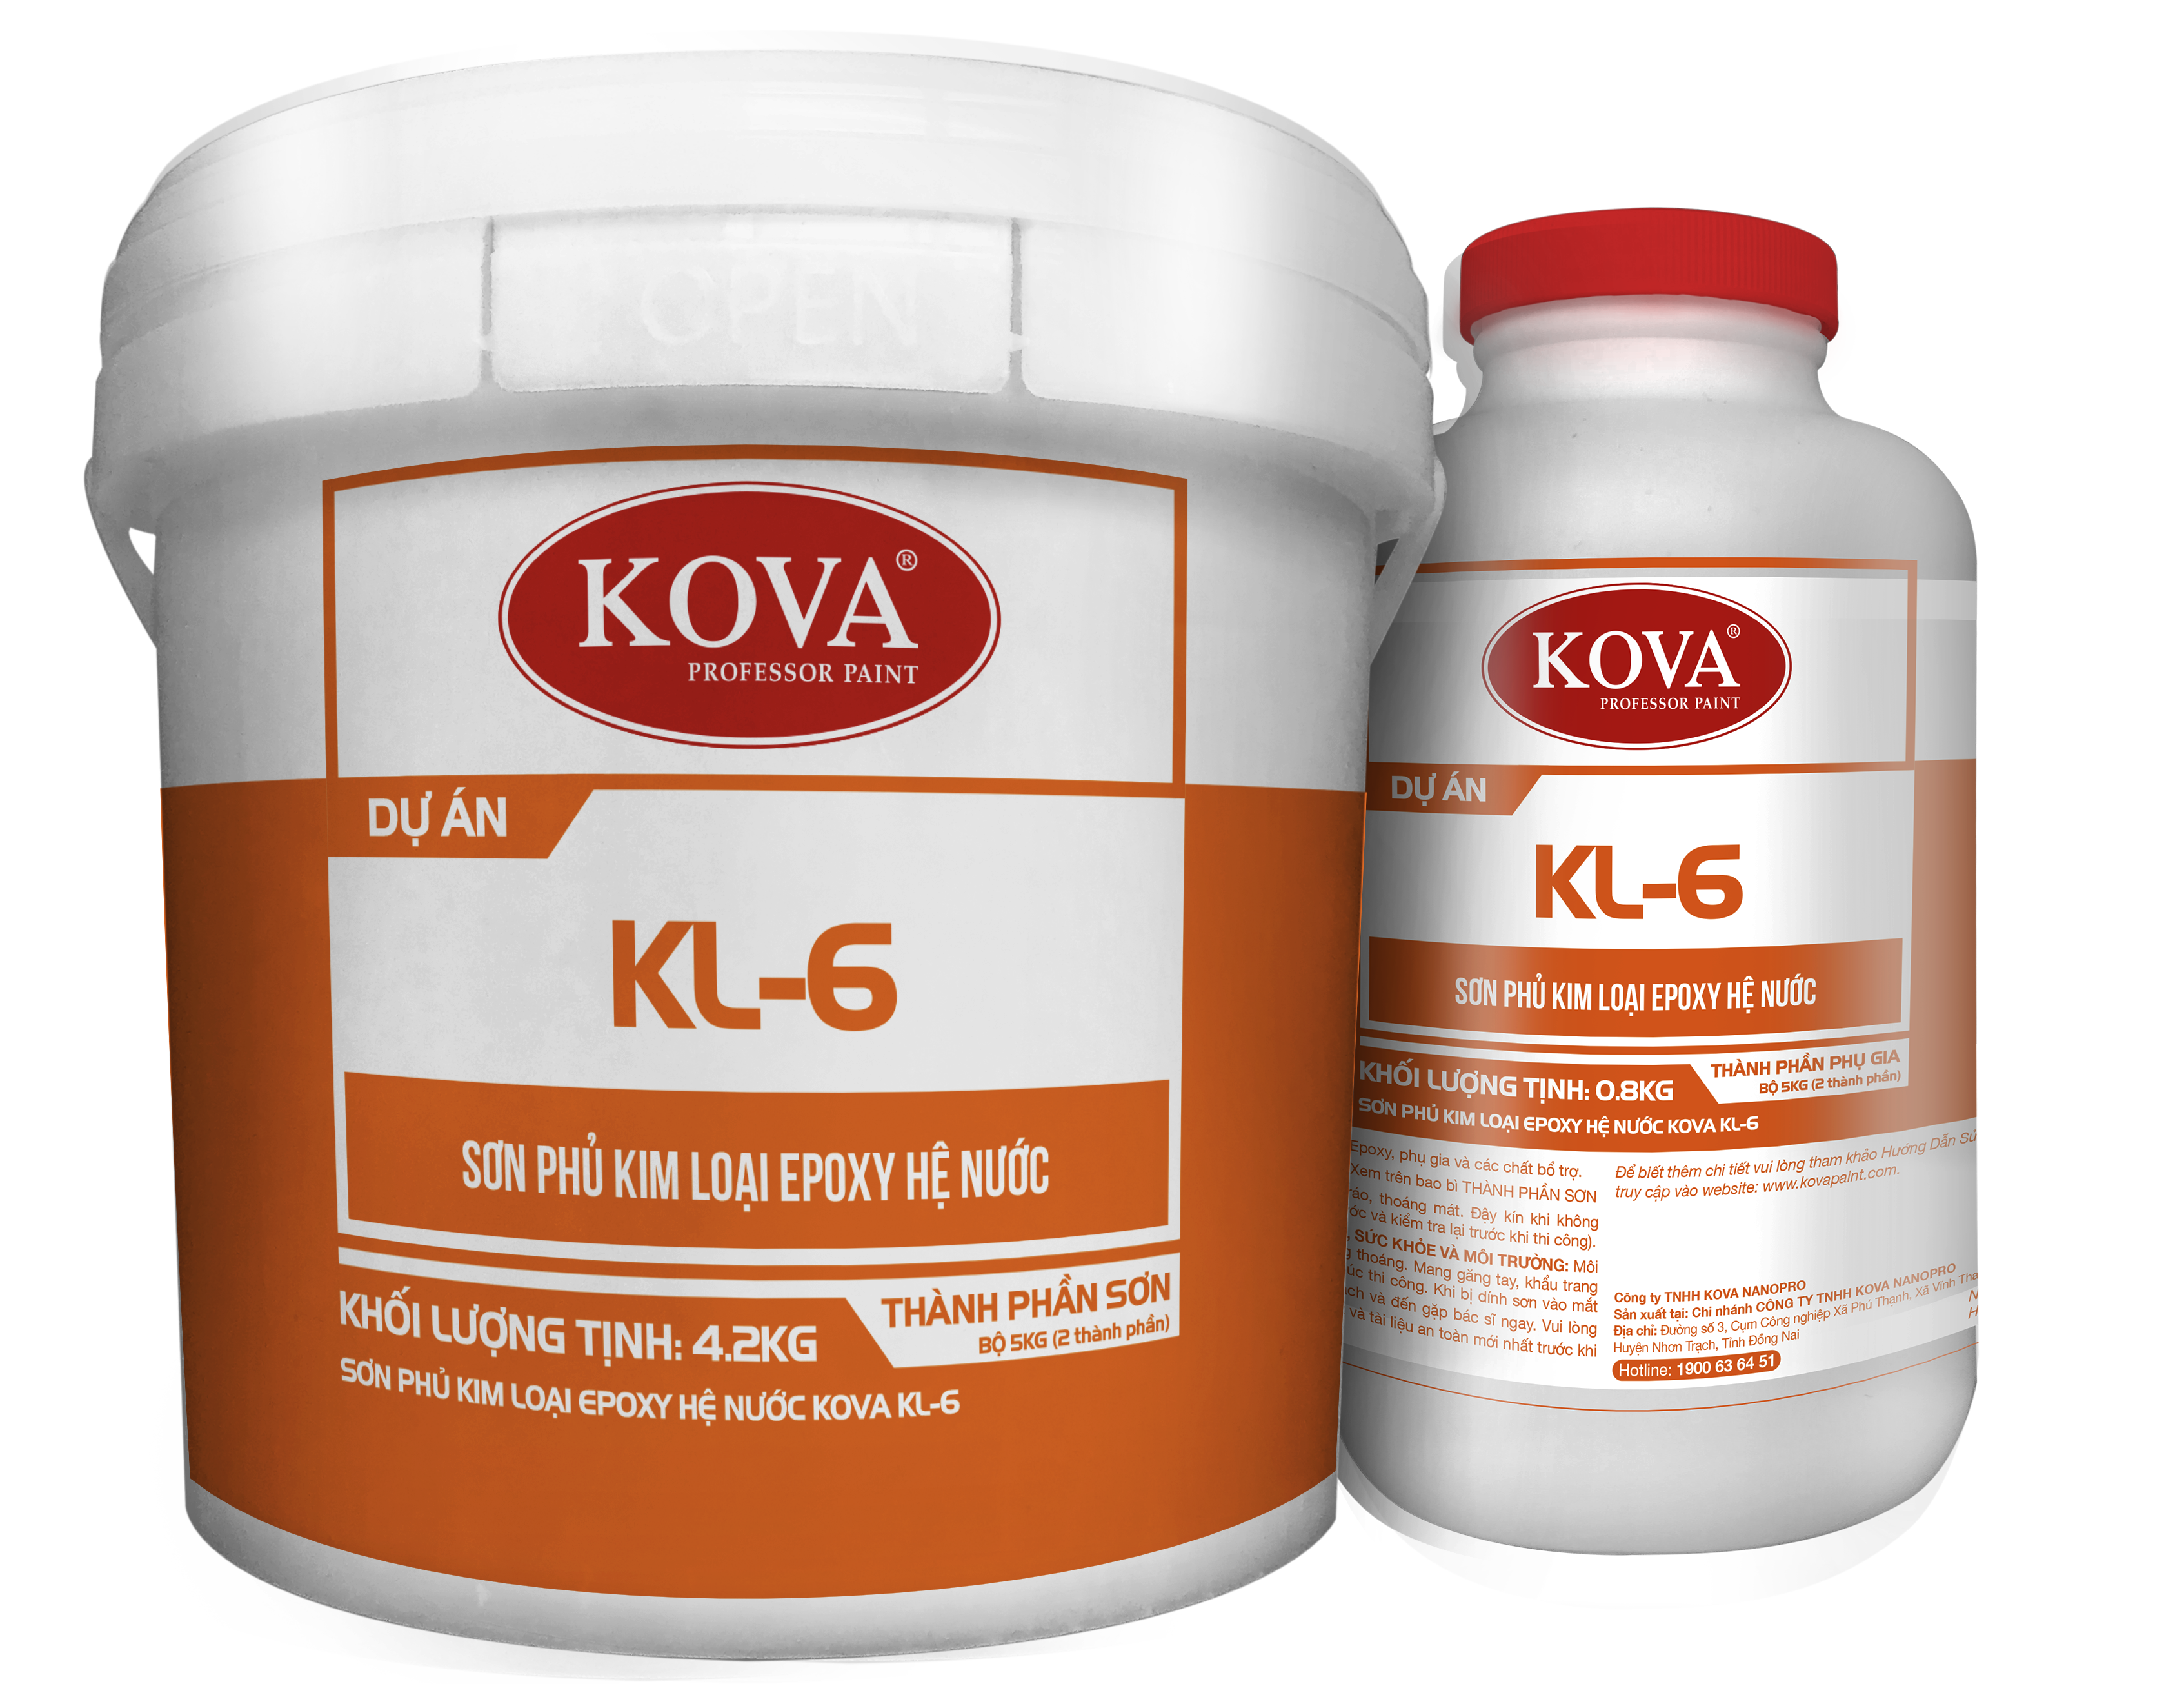 Với khả năng chống ăn mòn và chống trầy xước, KOVA KL-6 sẽ bảo vệ bề mặt kim loại của bạn trước các tác động khắc nghiệt nhất.